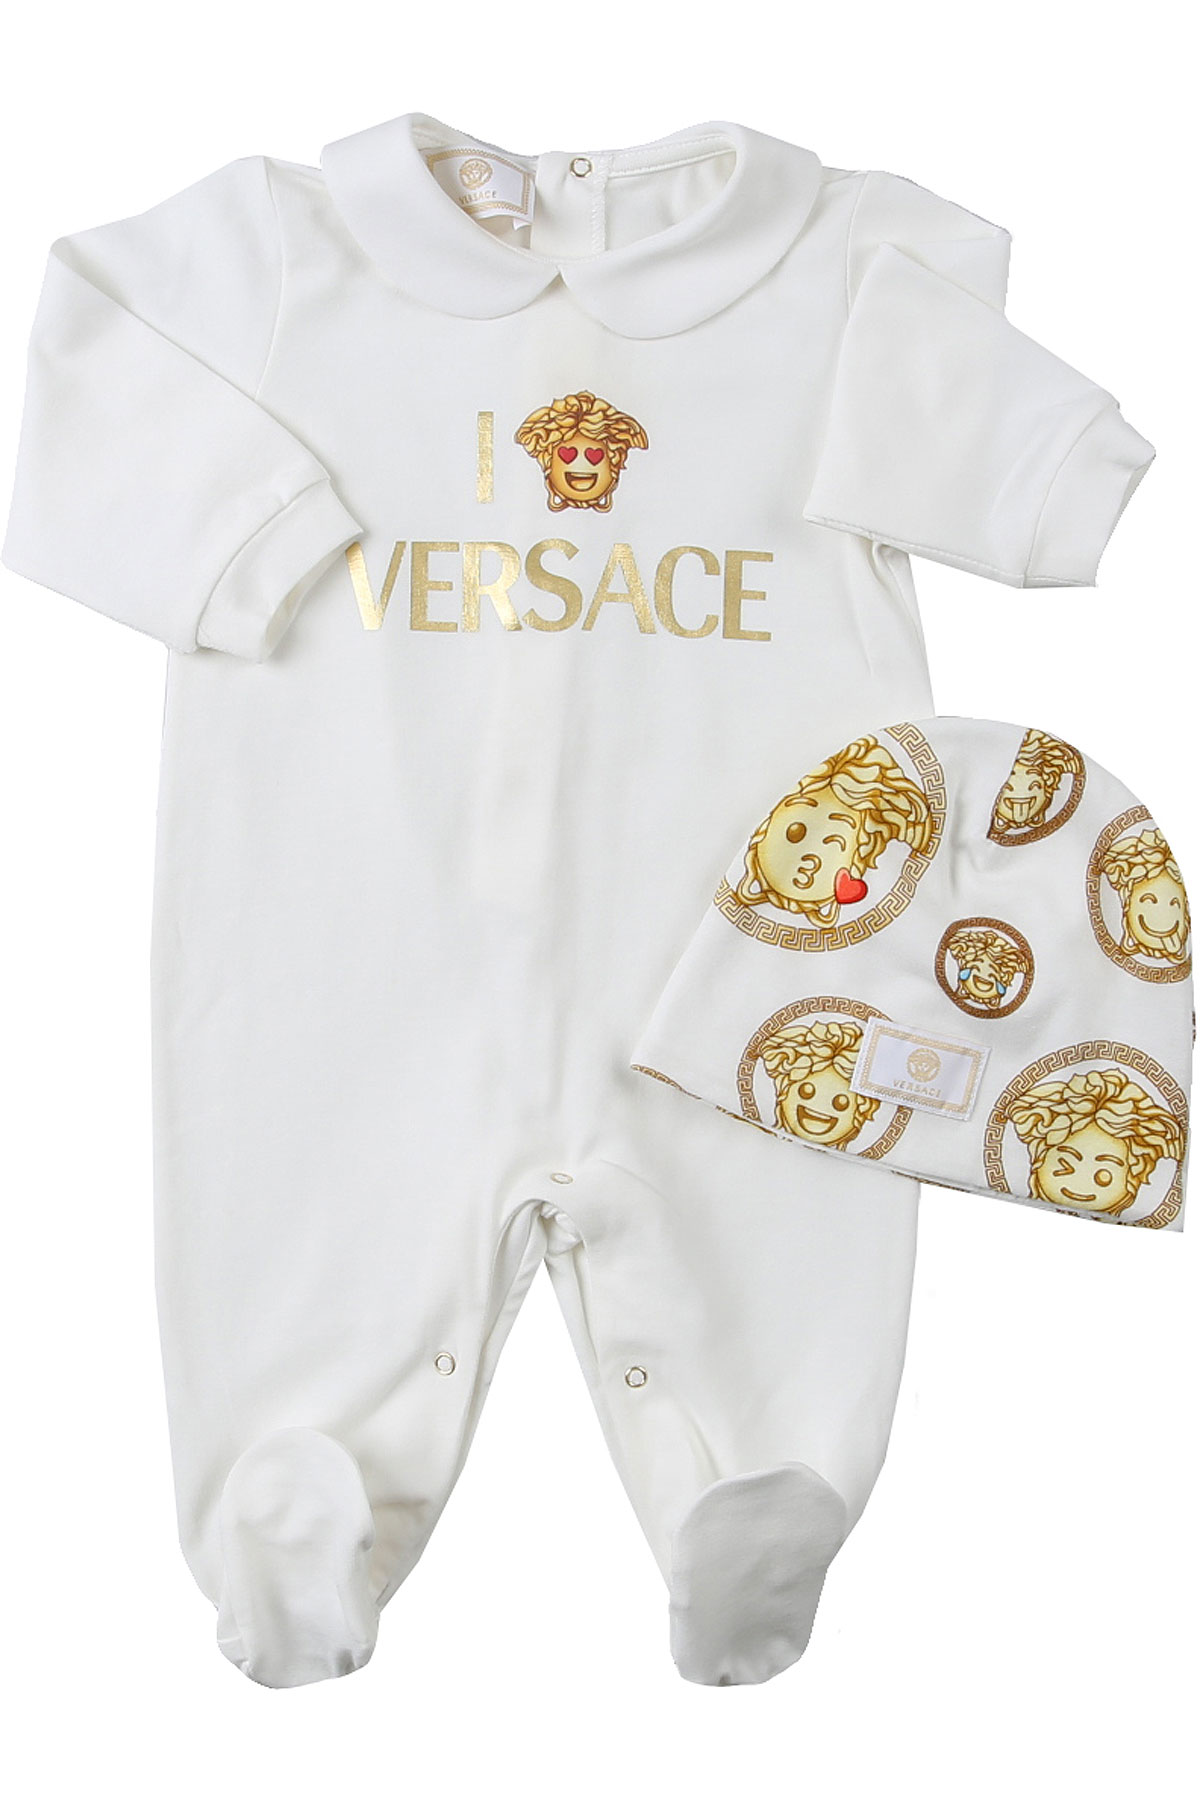 Versace Baby Set für Mädchen Günstig im Sale, Weiss, Baumwolle, 2017, 12M 6M